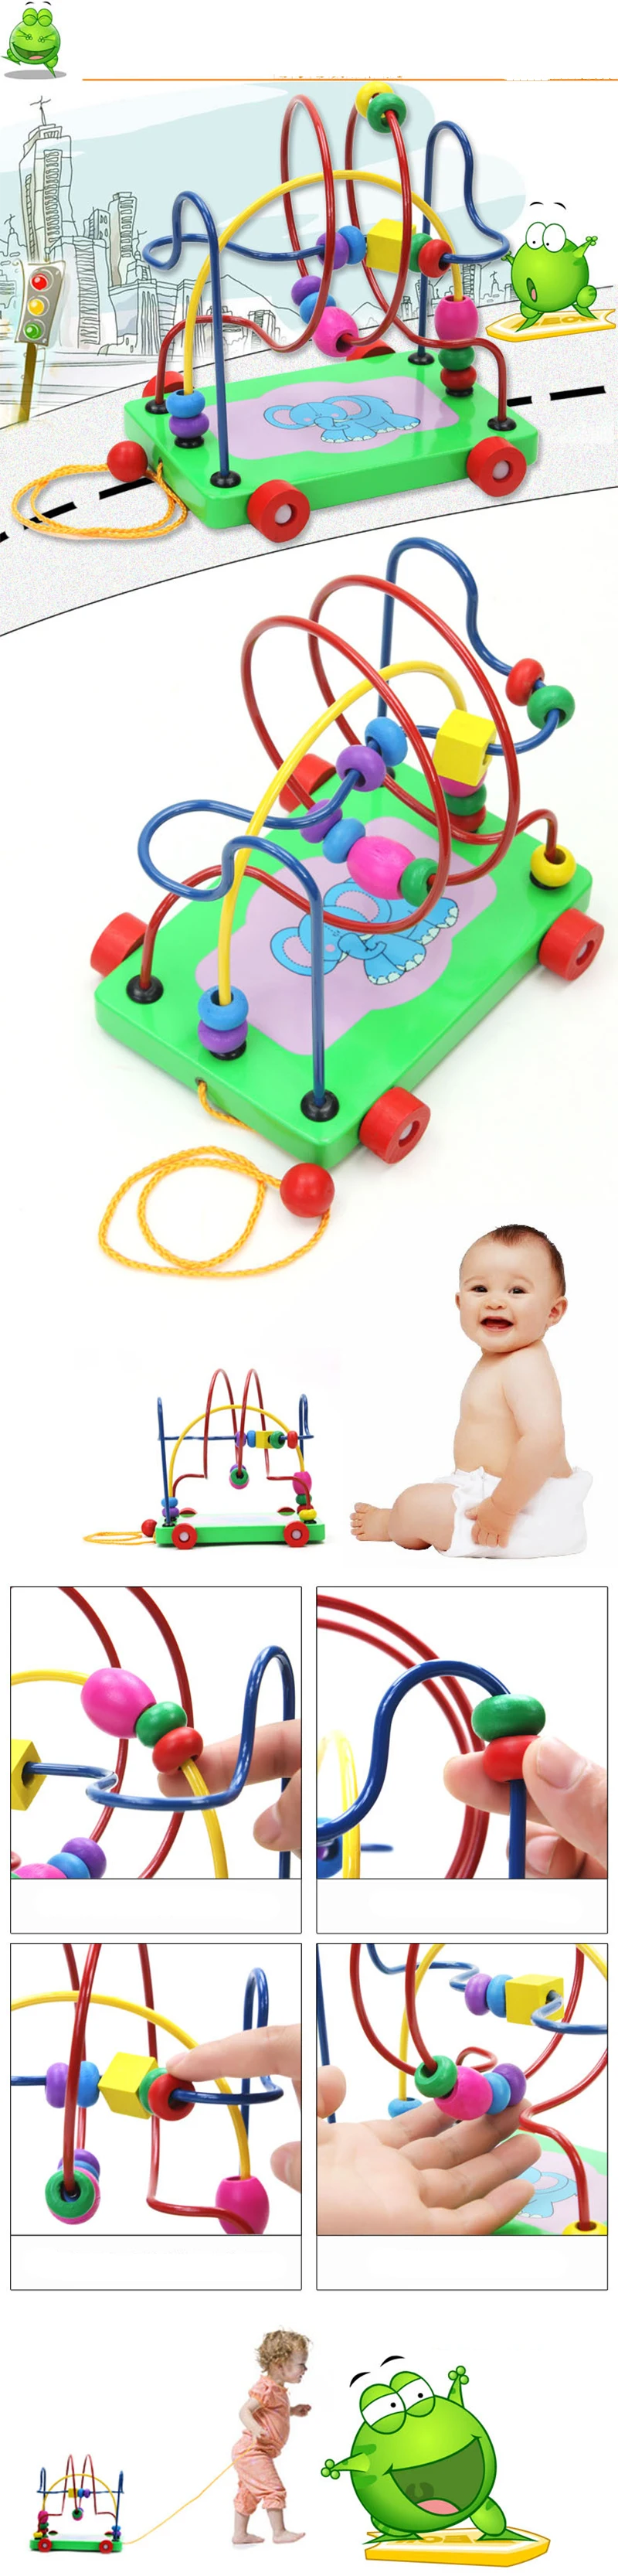 Новинка! Детские деревянные игрушки в виде слона с круглыми бусинами для раннего образования, подарки на день рождения